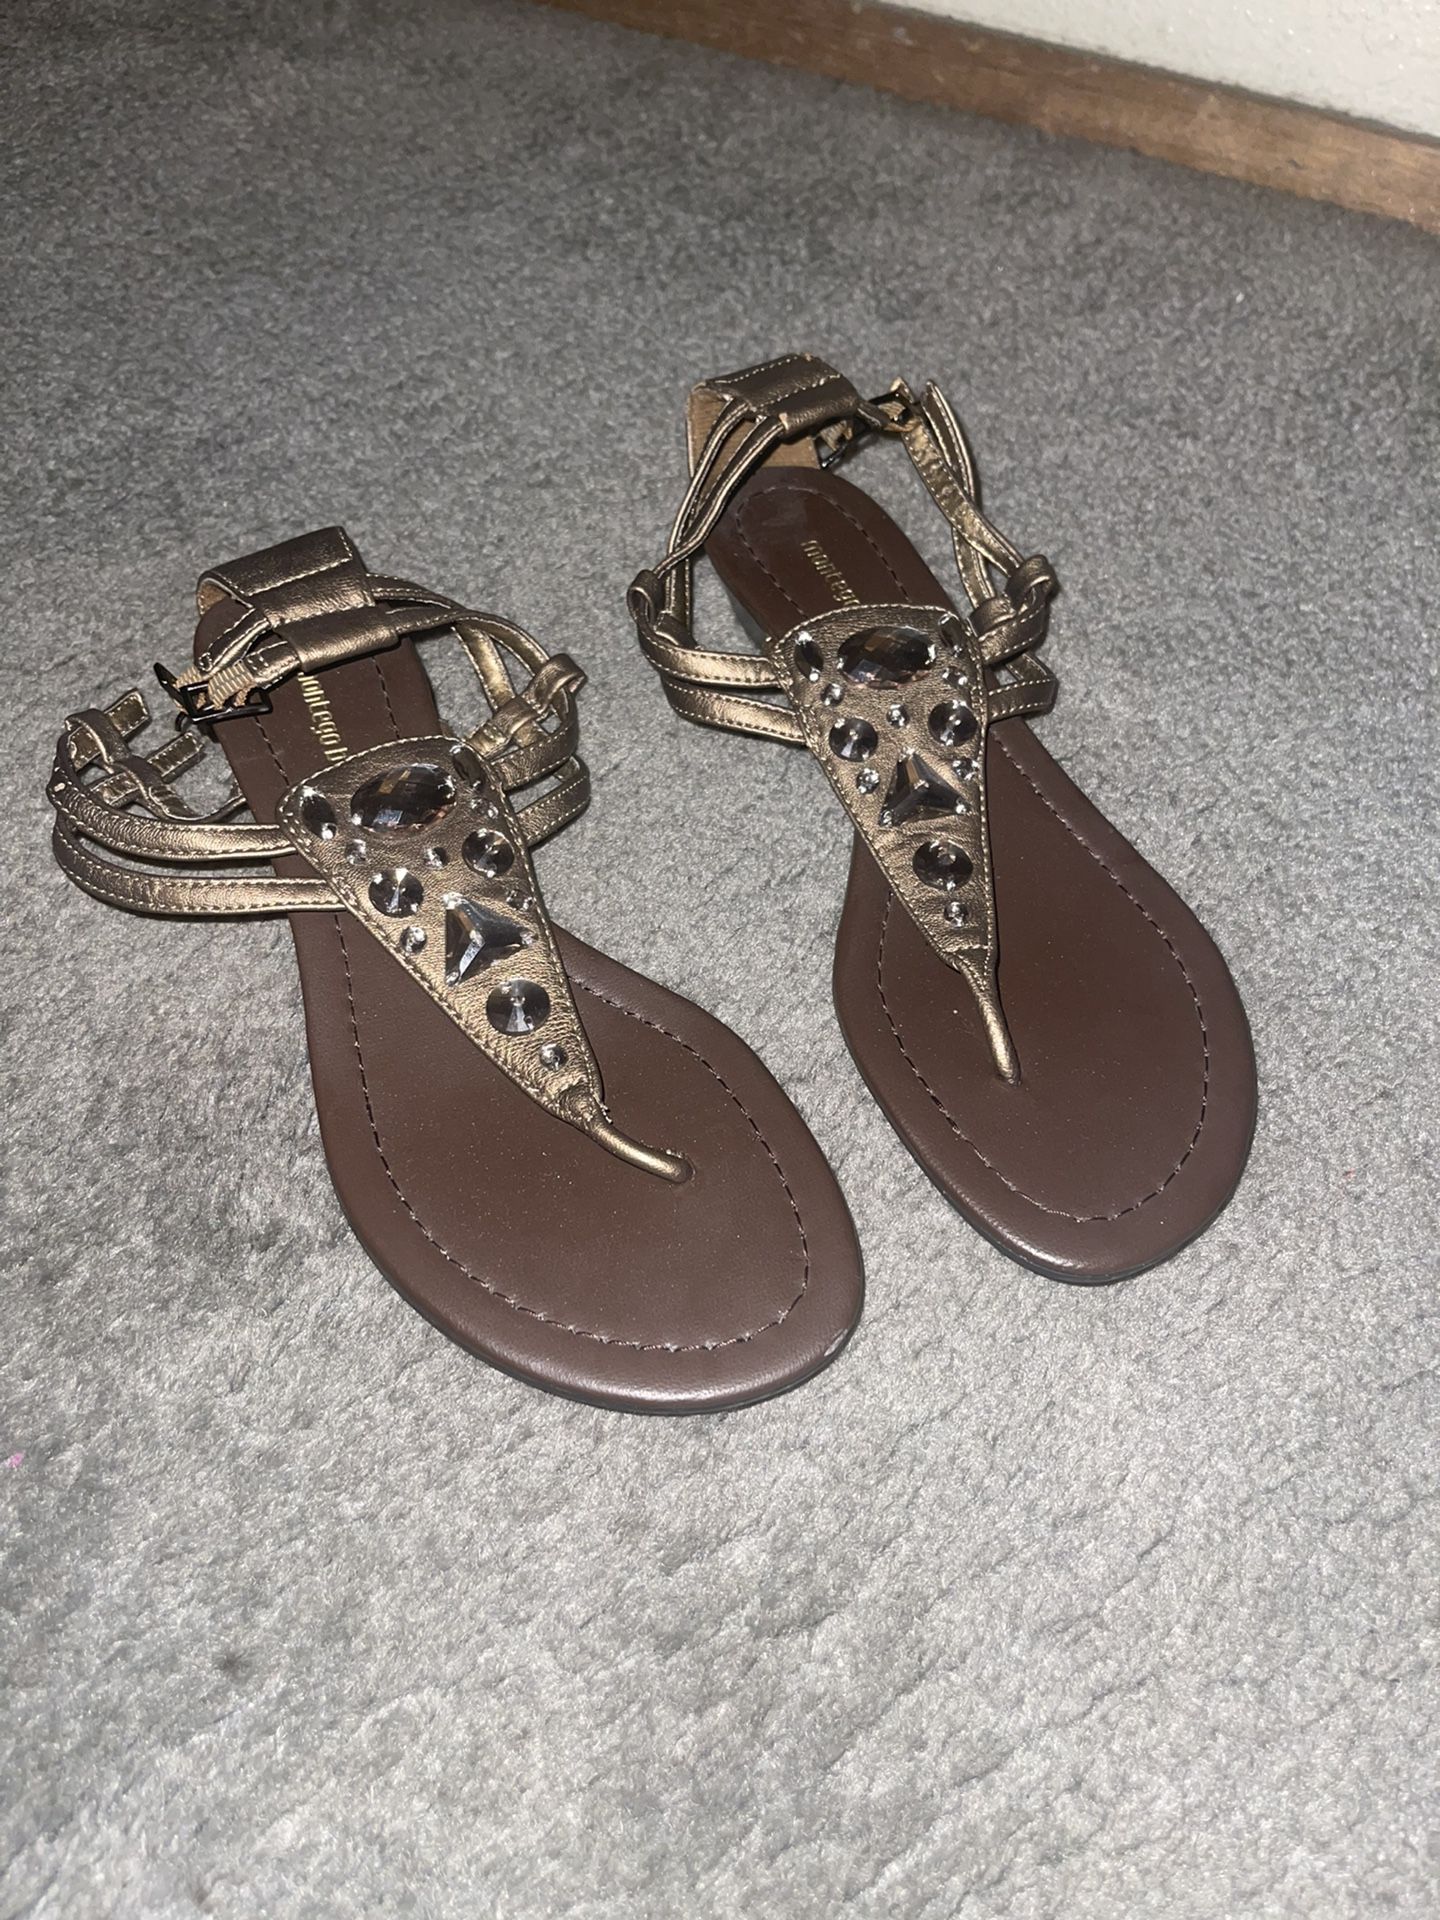 Montego Bay Club Rhinestone Sandals *size 7*